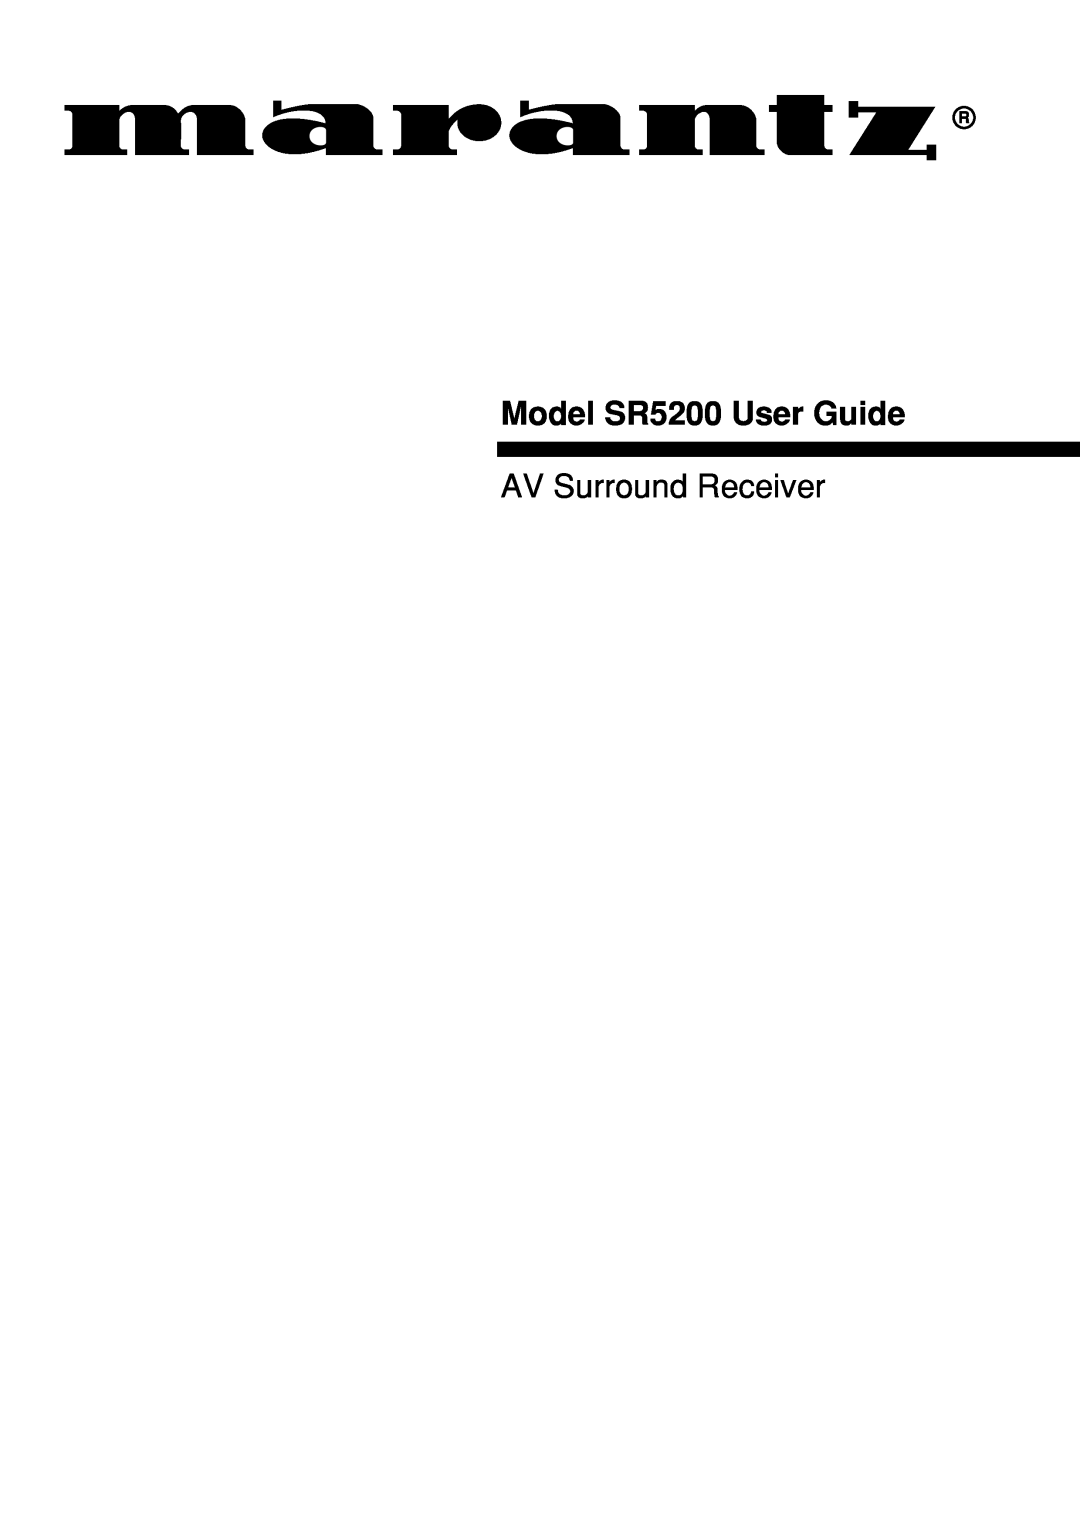 Marantz manual Model SR5200 User Guide, AV Surround Receiver 